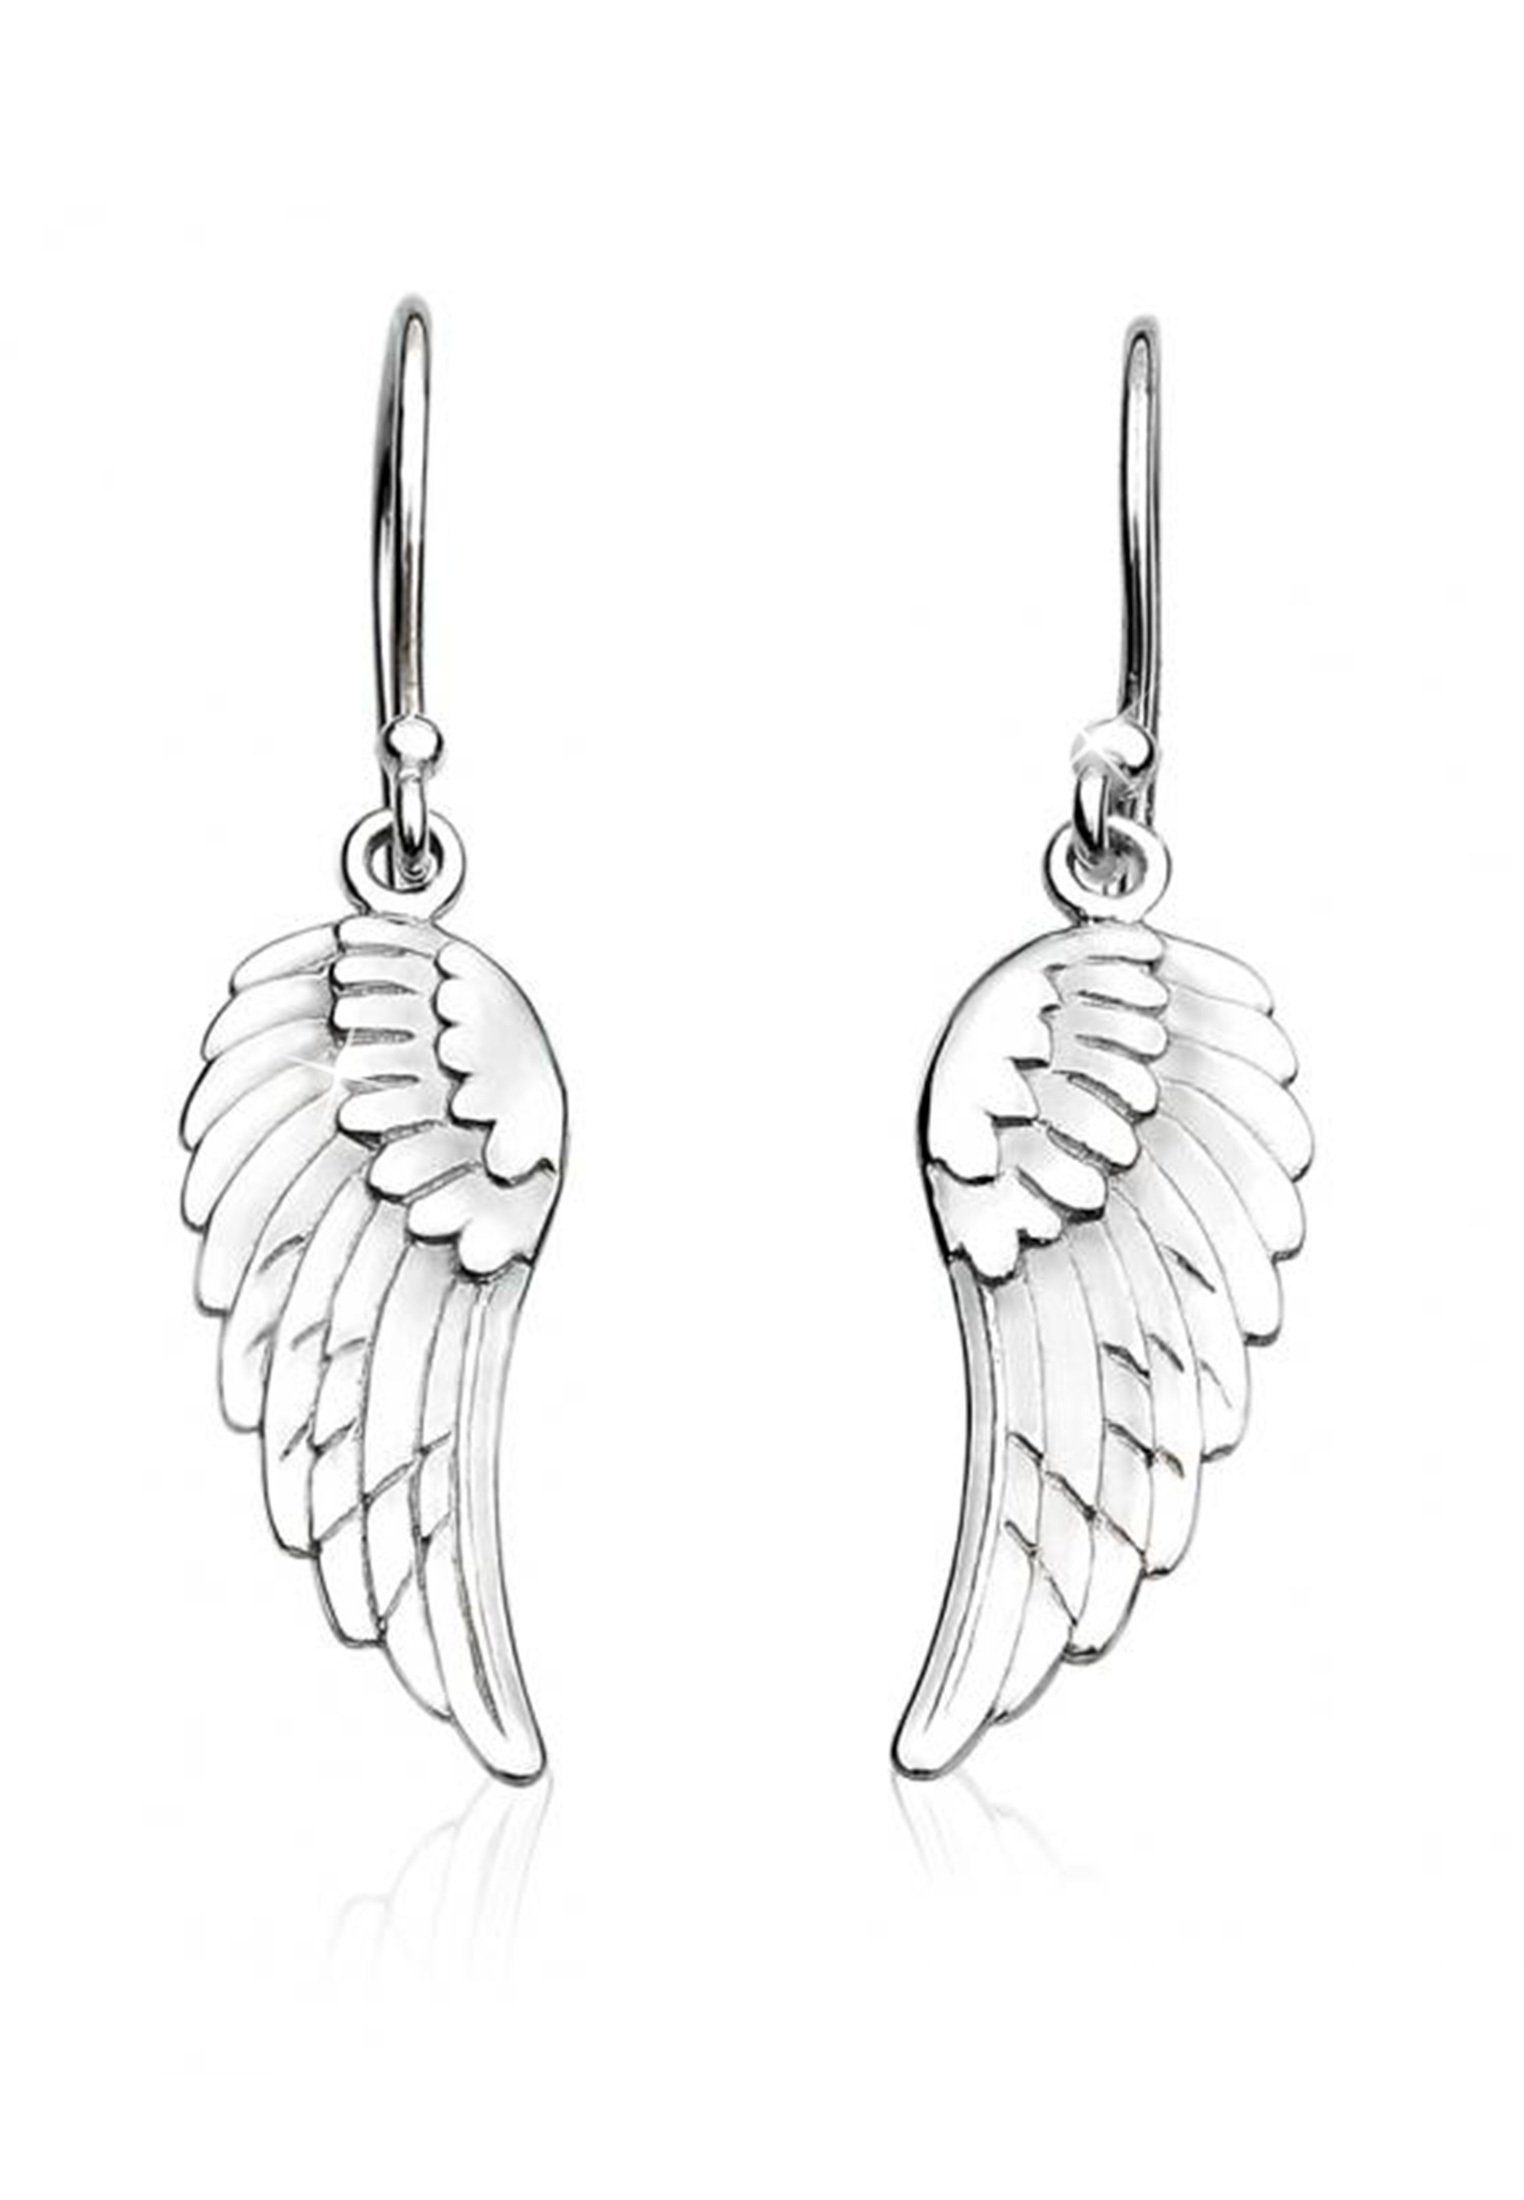 Ohrhänger und Schmuckstück Flügel Glücksbringer Nenalina Engel Ohrhänger Paar anlaufgeschützt hochglanzpoliert 925 Silber,